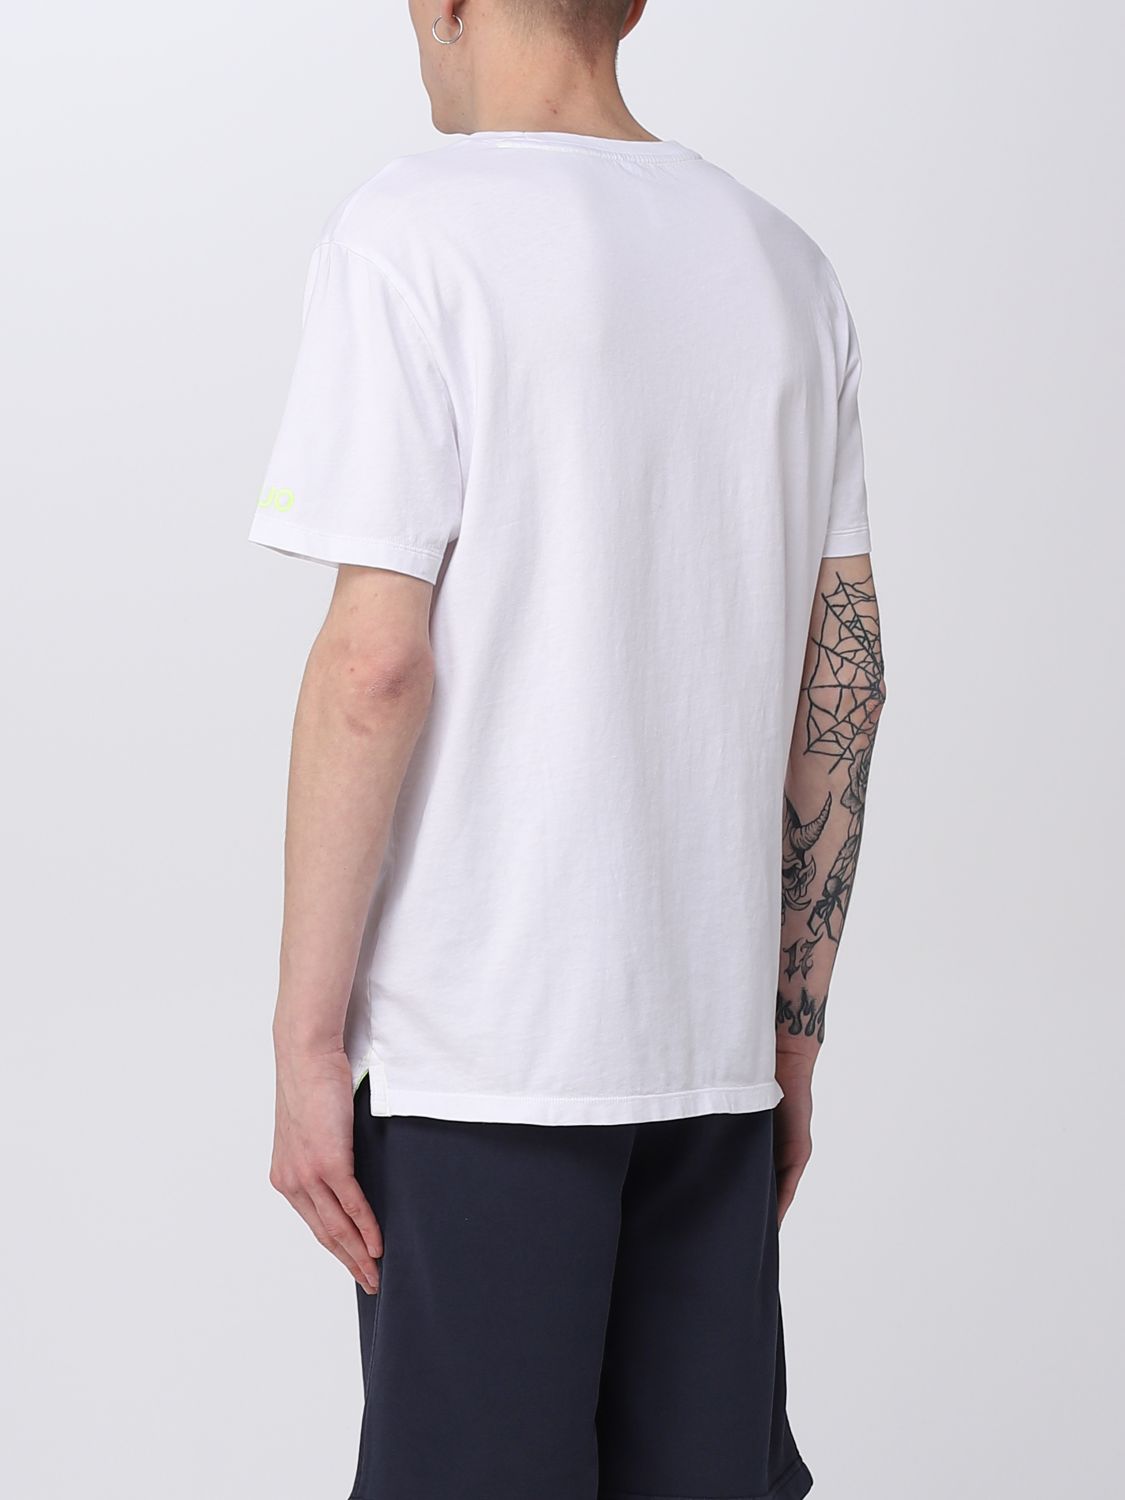 썬 68(SUN 68): 티셔츠 남성 - 블루 | GIGLIO.COM에서 썬 68 티셔츠 T33107 상품들을 온라인으로 만나보세요